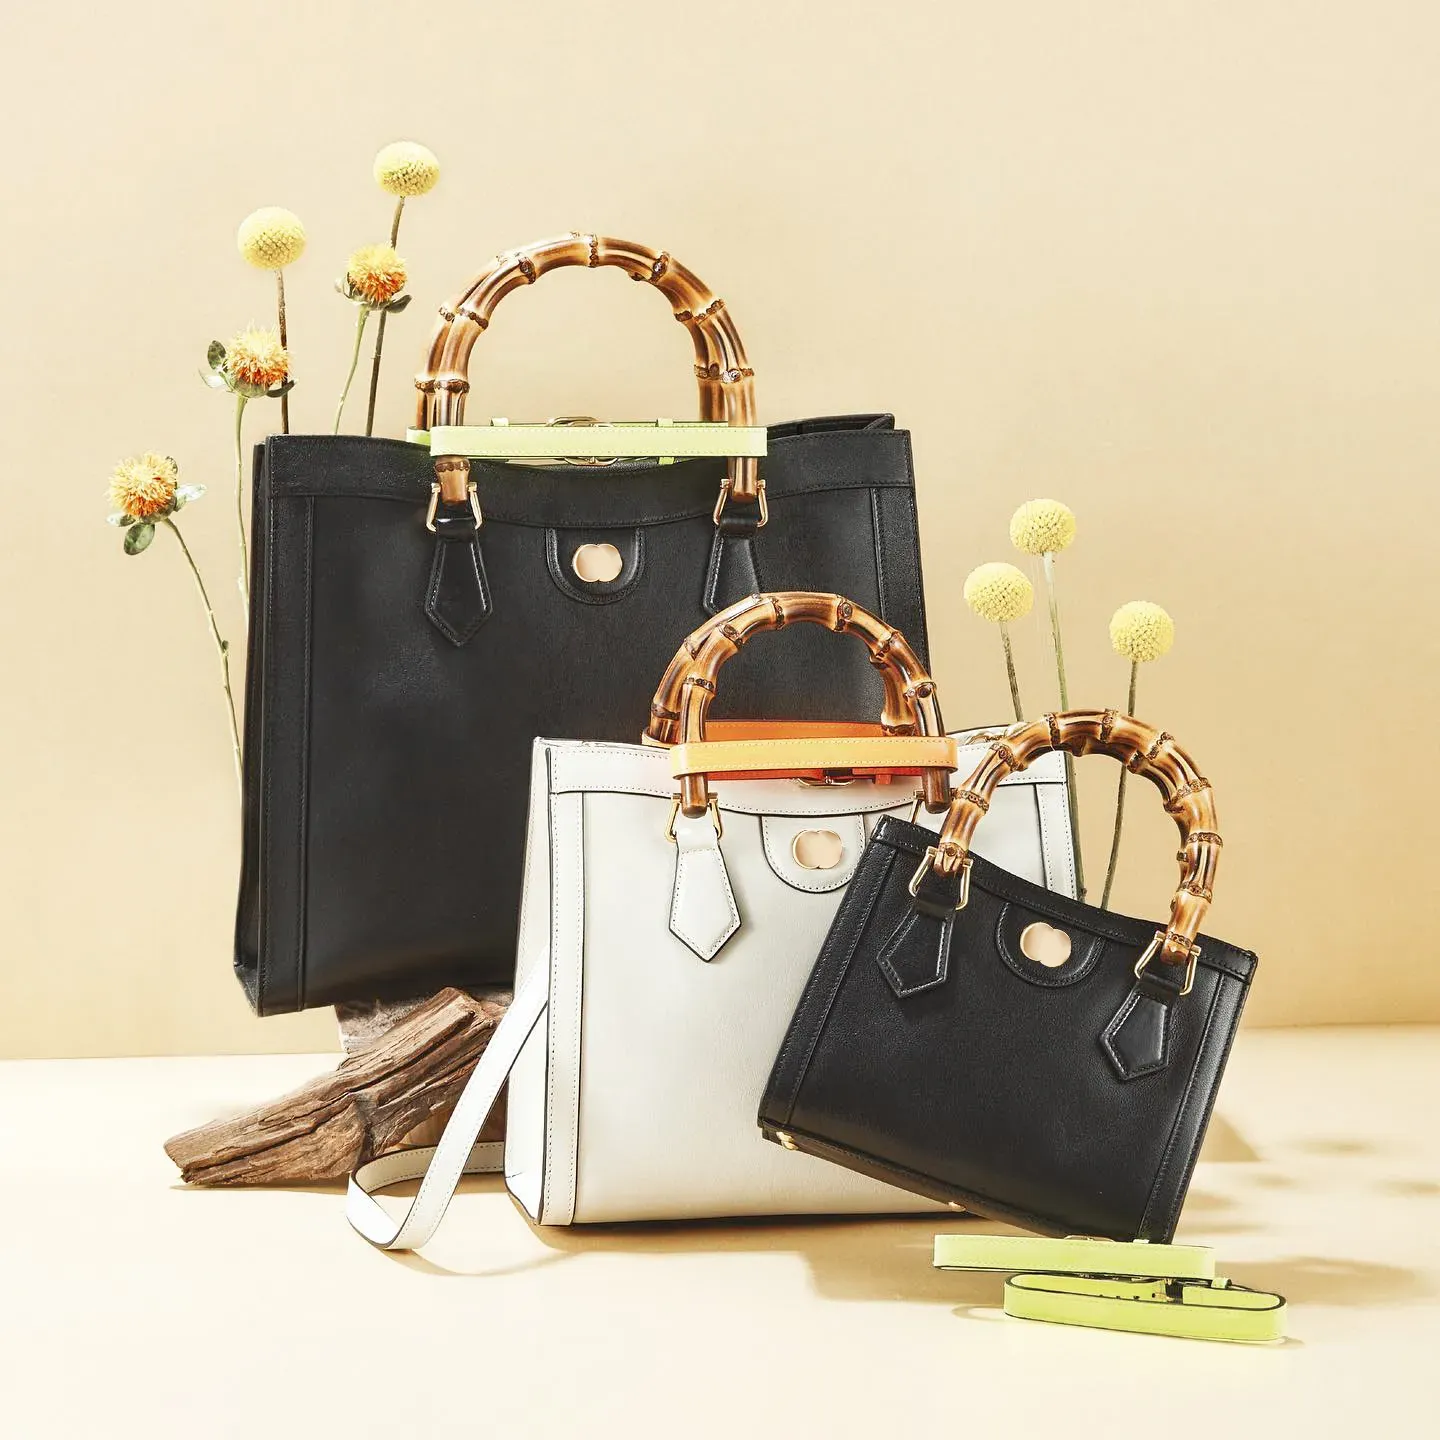 Классическая мужская сумка через плечо Marmont Diana Bamboo, сумки для путешествий с кошельками на плечевом ремне, роскошные женские дизайнерские сумки с верхней ручкой, сумки из натуральной кожи, сумки-клатчи-хобо